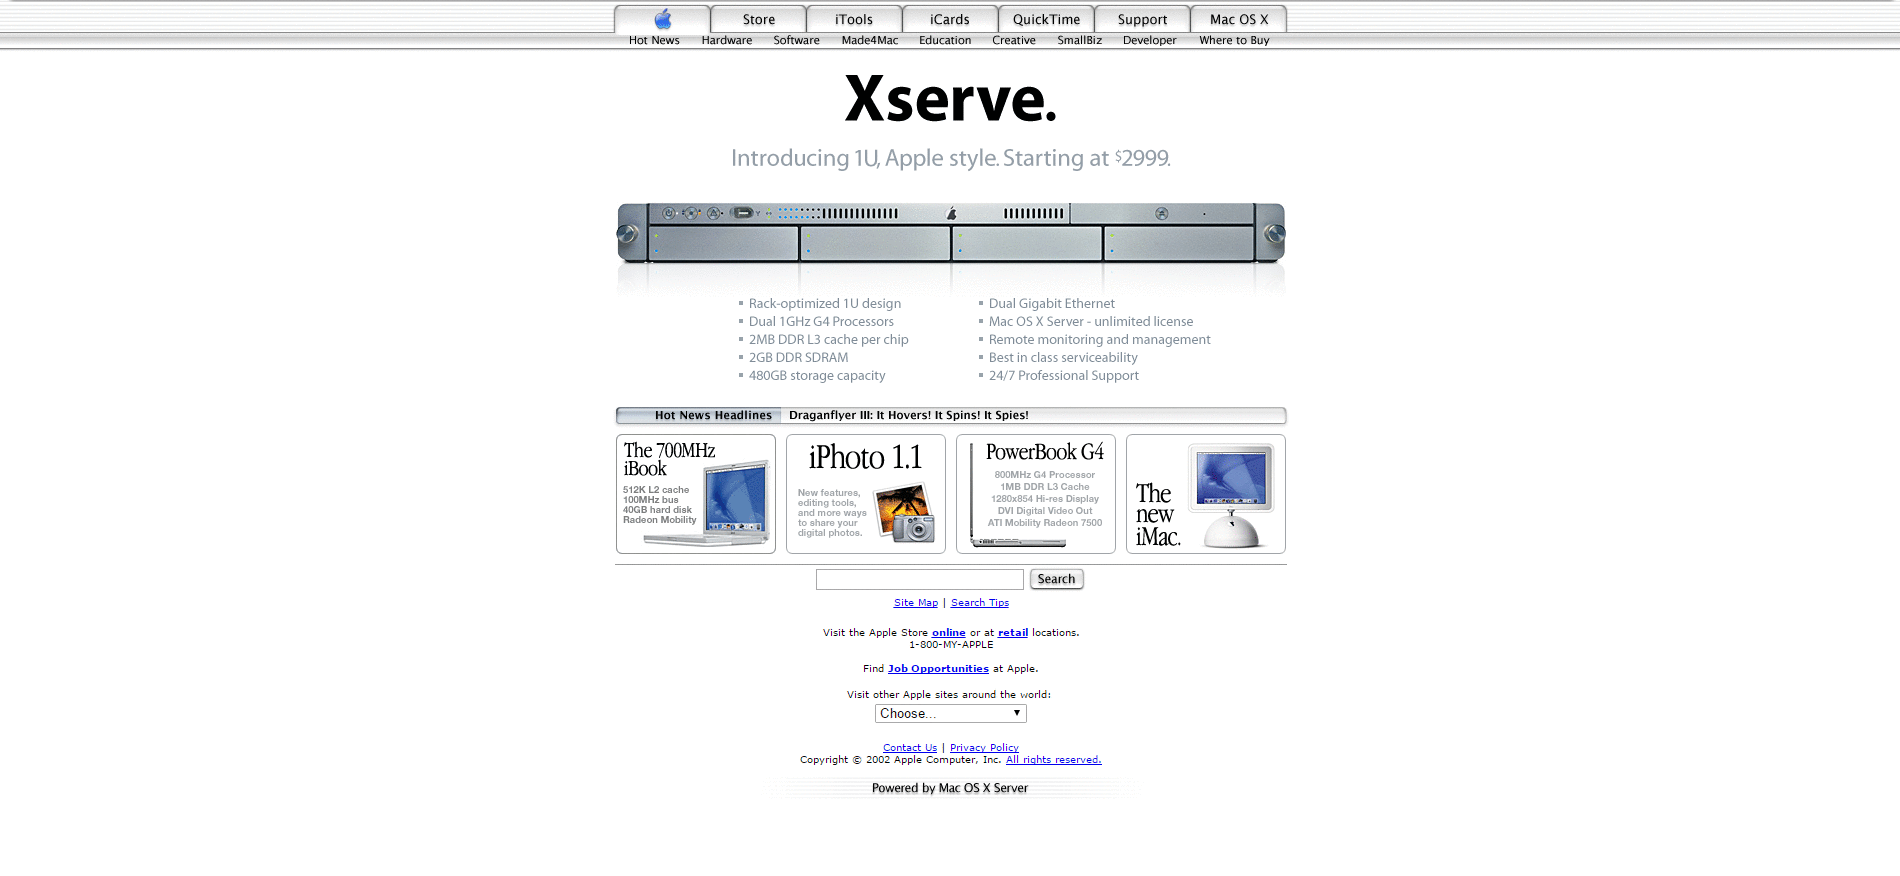 Website Design for apple.com in 2002